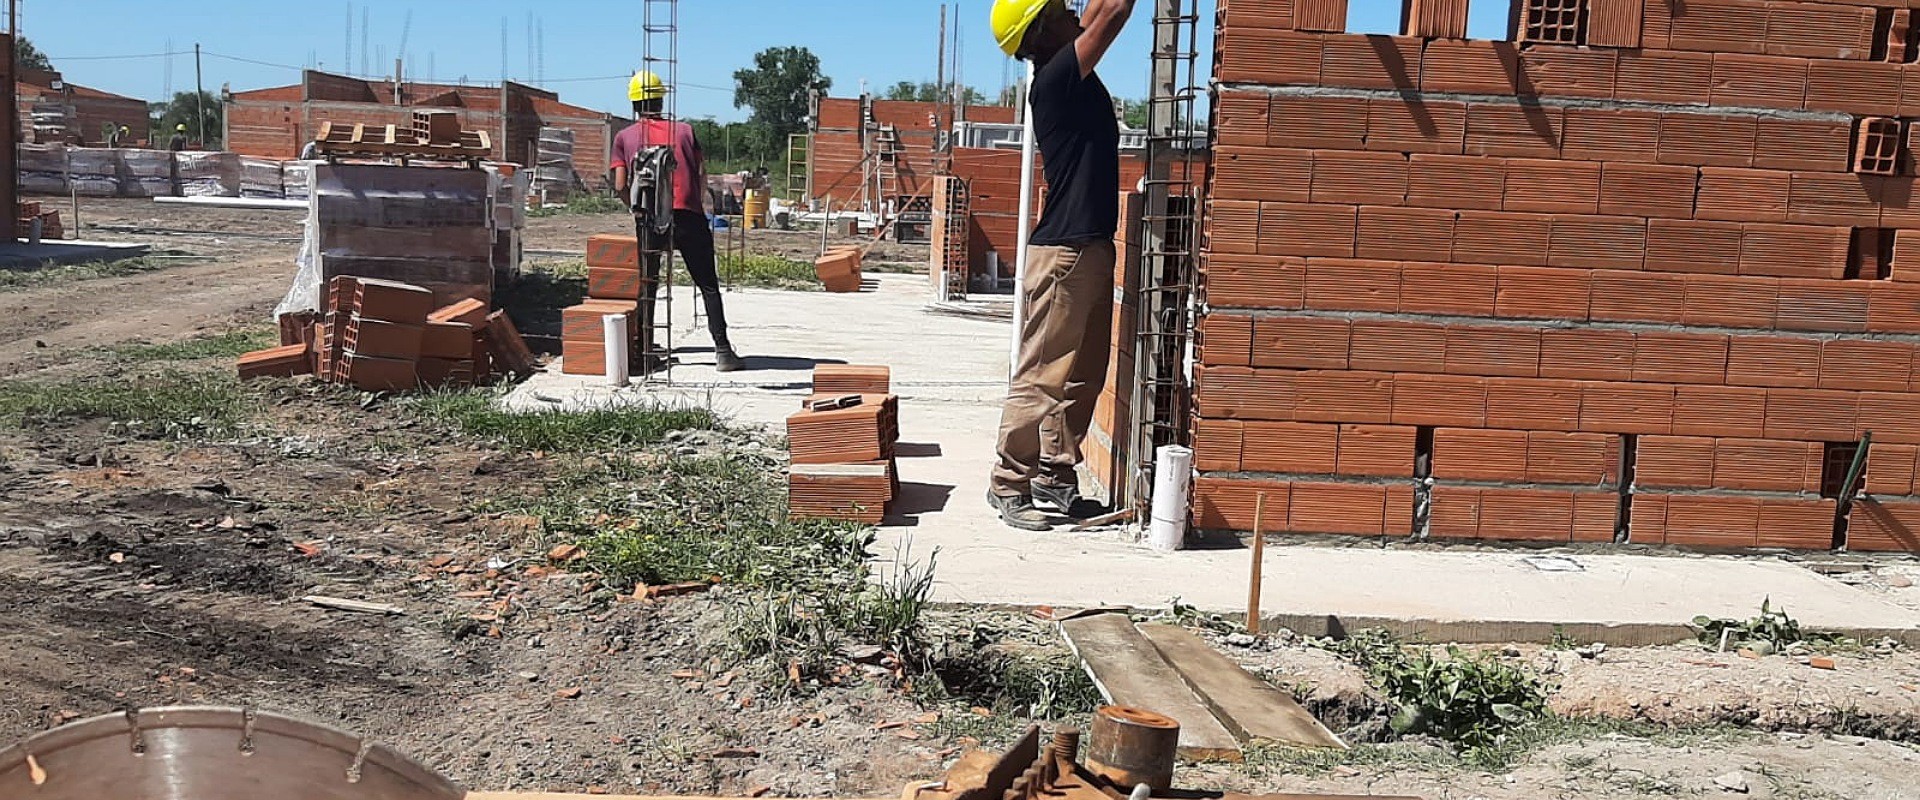 Nuevas viviendas se licitarán con fondos provinciales  para docentes  de Urdinarrain y empleados municipales de Ramírez